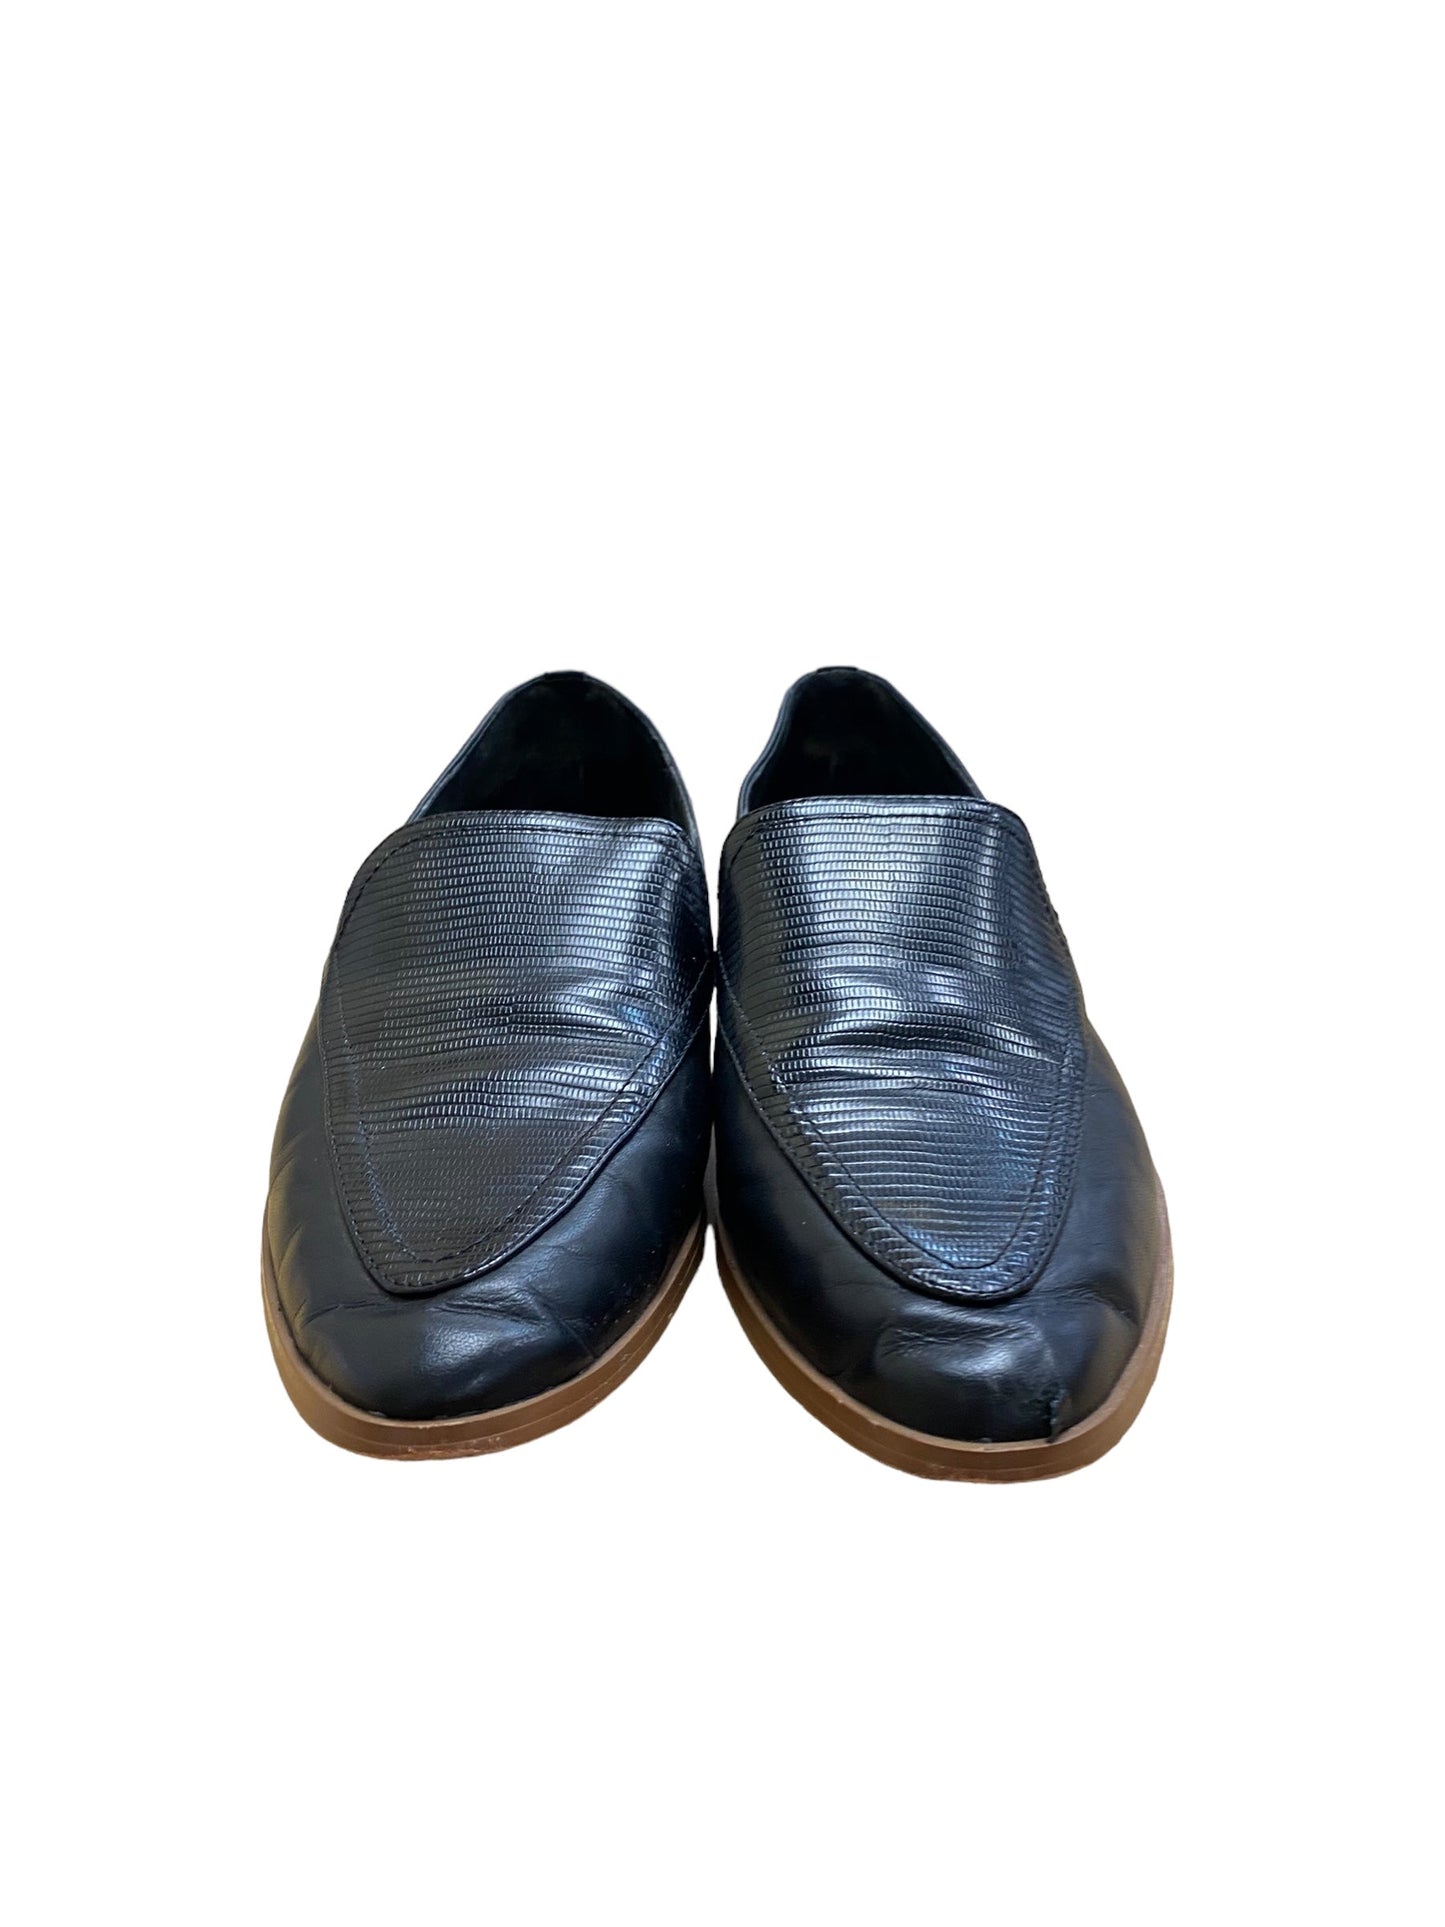 Black Shoes Flats Vince Camuto, Size 8